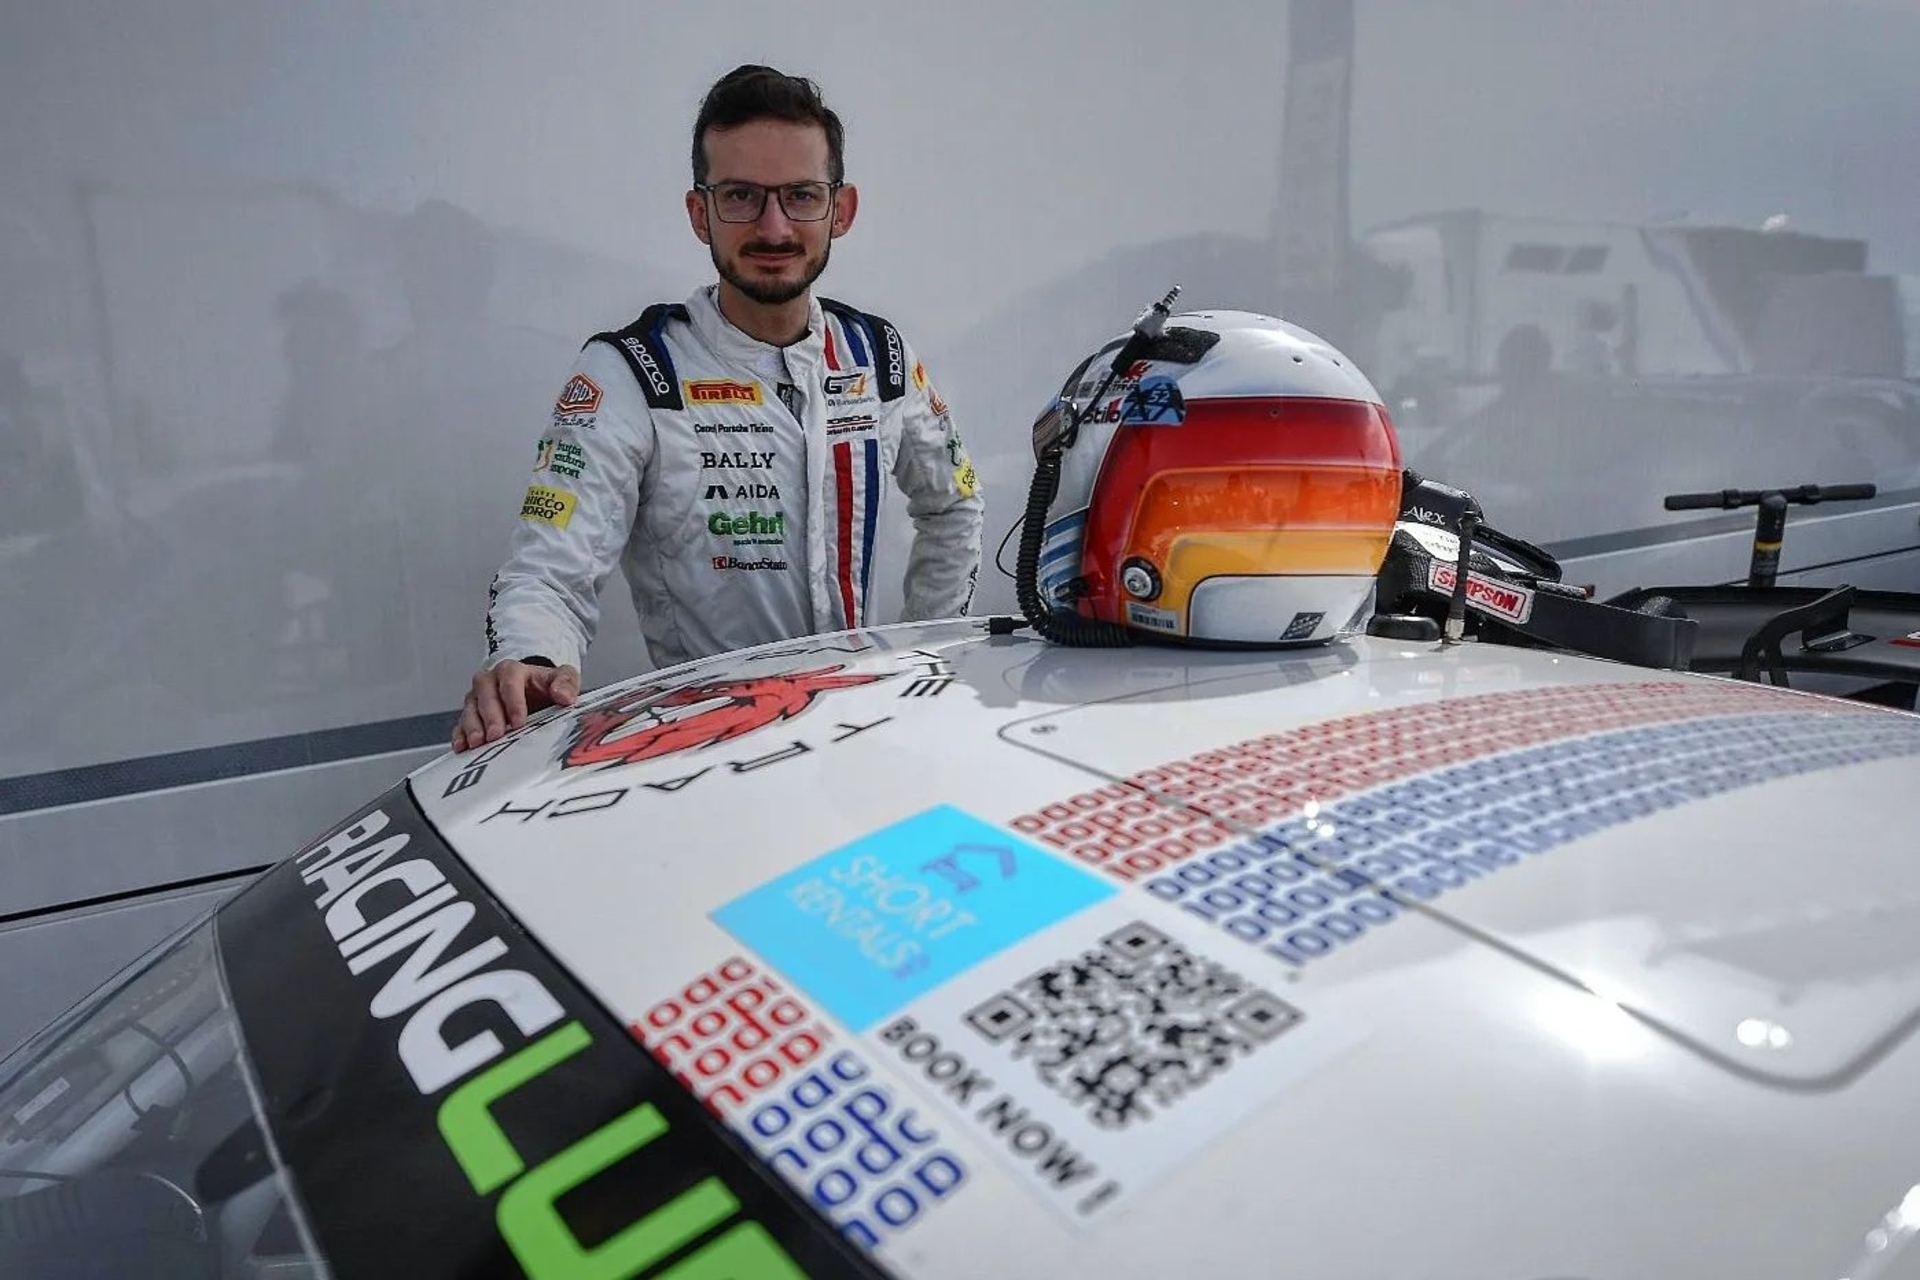 Alex Fontana: w rozmowie z Innovando.News kierowca z Ticino podsumowuje procesy wirtualizacji i cyfryzacji w wyścigach samochodowych